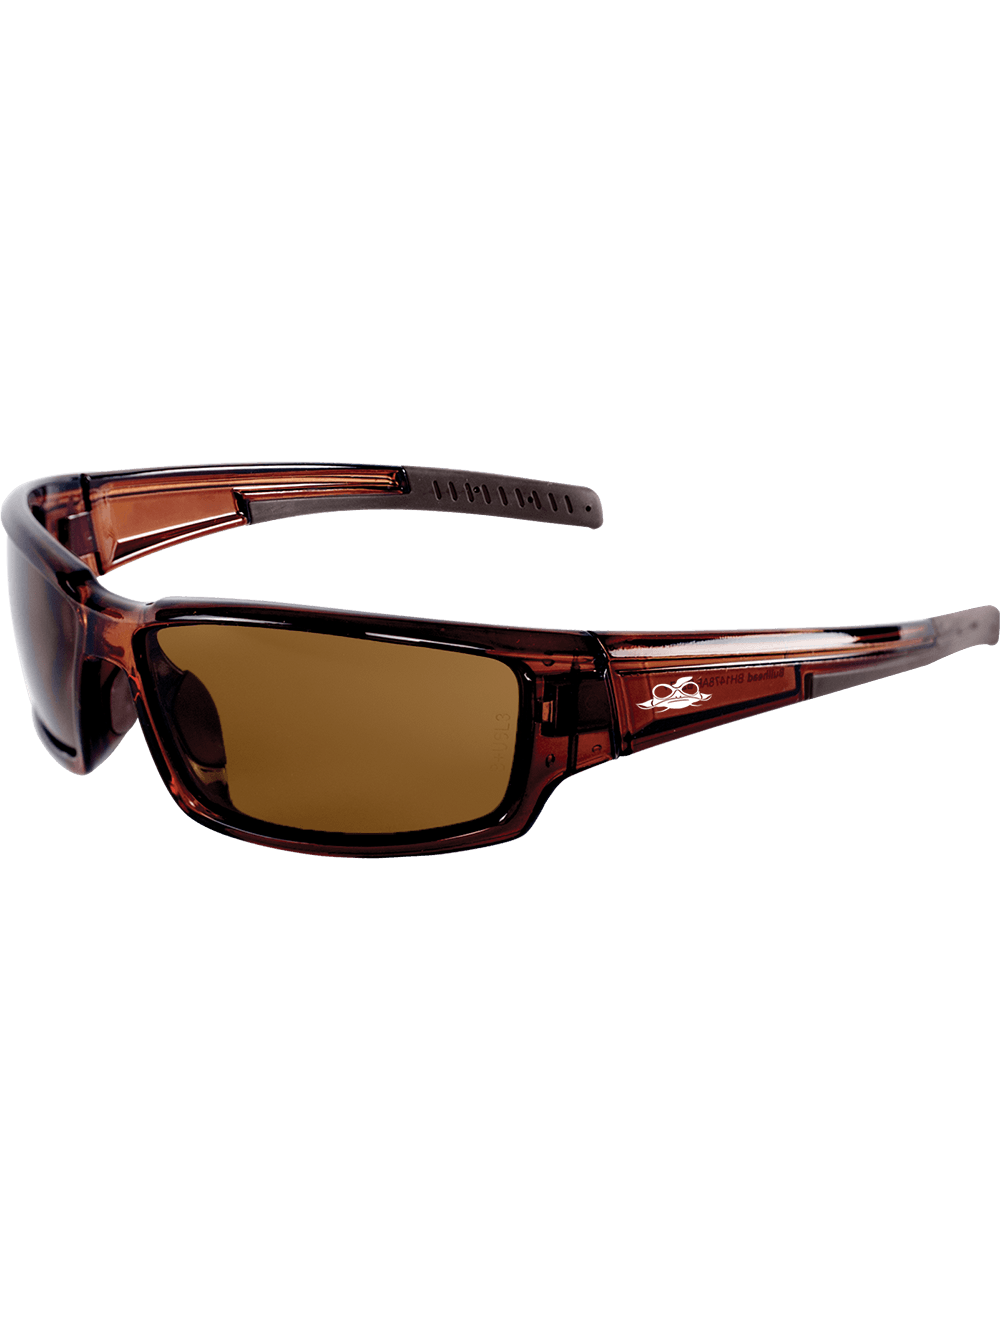 Maki® Brown Anti-Fog Lens, Crystal Brown Frame Safety Glasses - BH1478AF